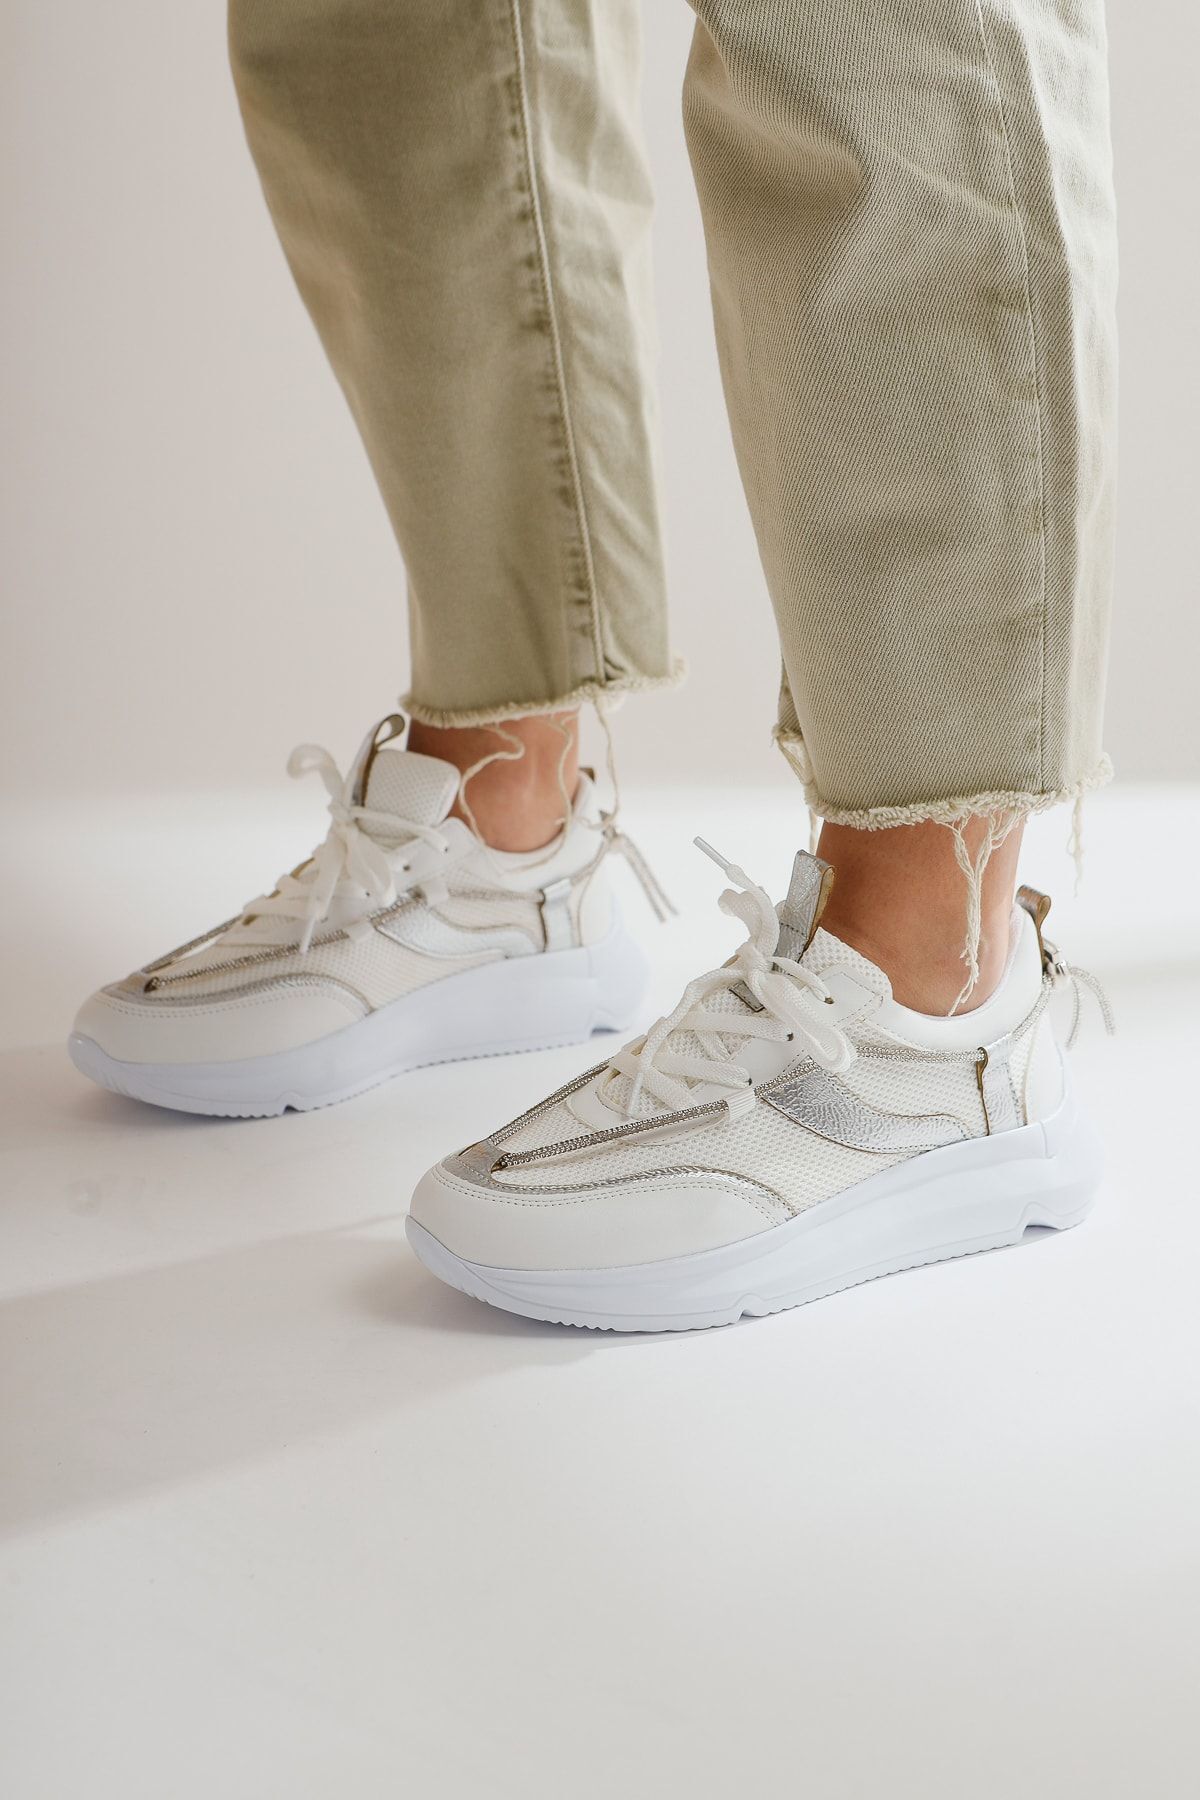 Limoya Luann Beyaz Taş Detaylı Bağcıklı Sneakers Spor Ayakkabı